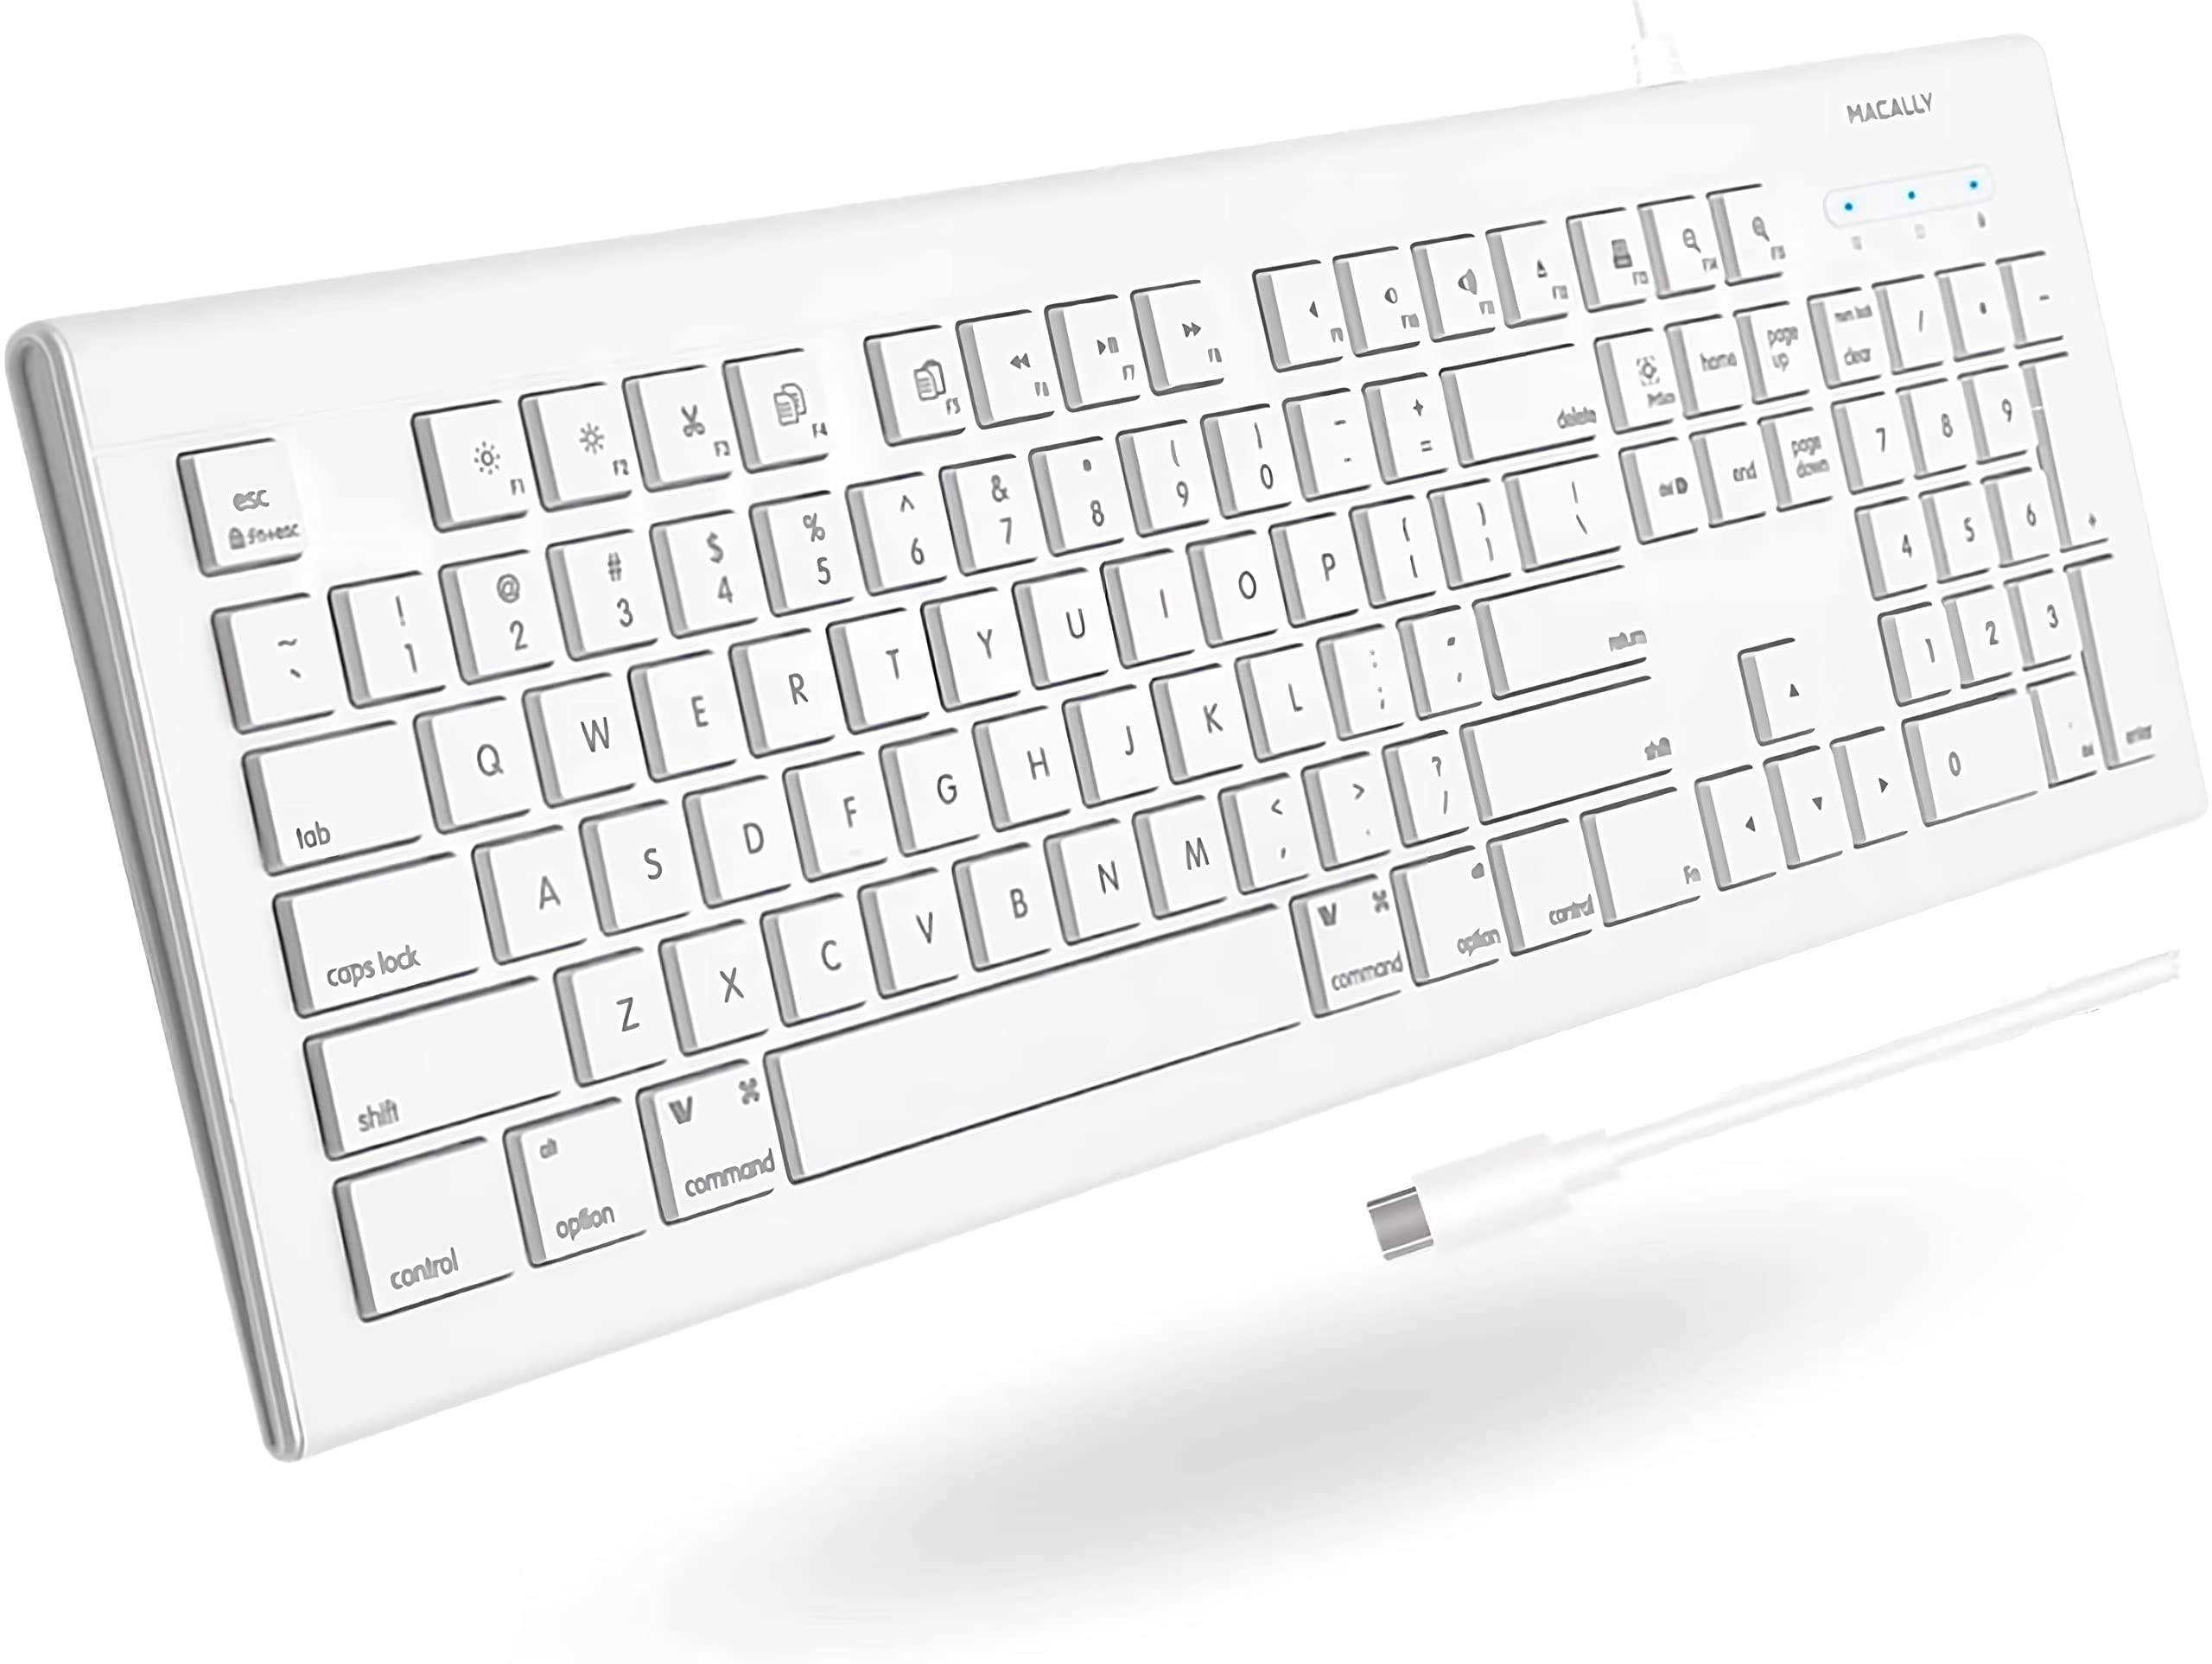 Macally Kabelgebundene USB C Tastatur für Mac und PC,Budget Apple Wired Keyboard Ersatz,Low Profile 104 Key Wired Mac Tastatur mit 15 MacOS Shortcuts,Plug and Play iMac Tastatur USB C (1.5 m Kabel)